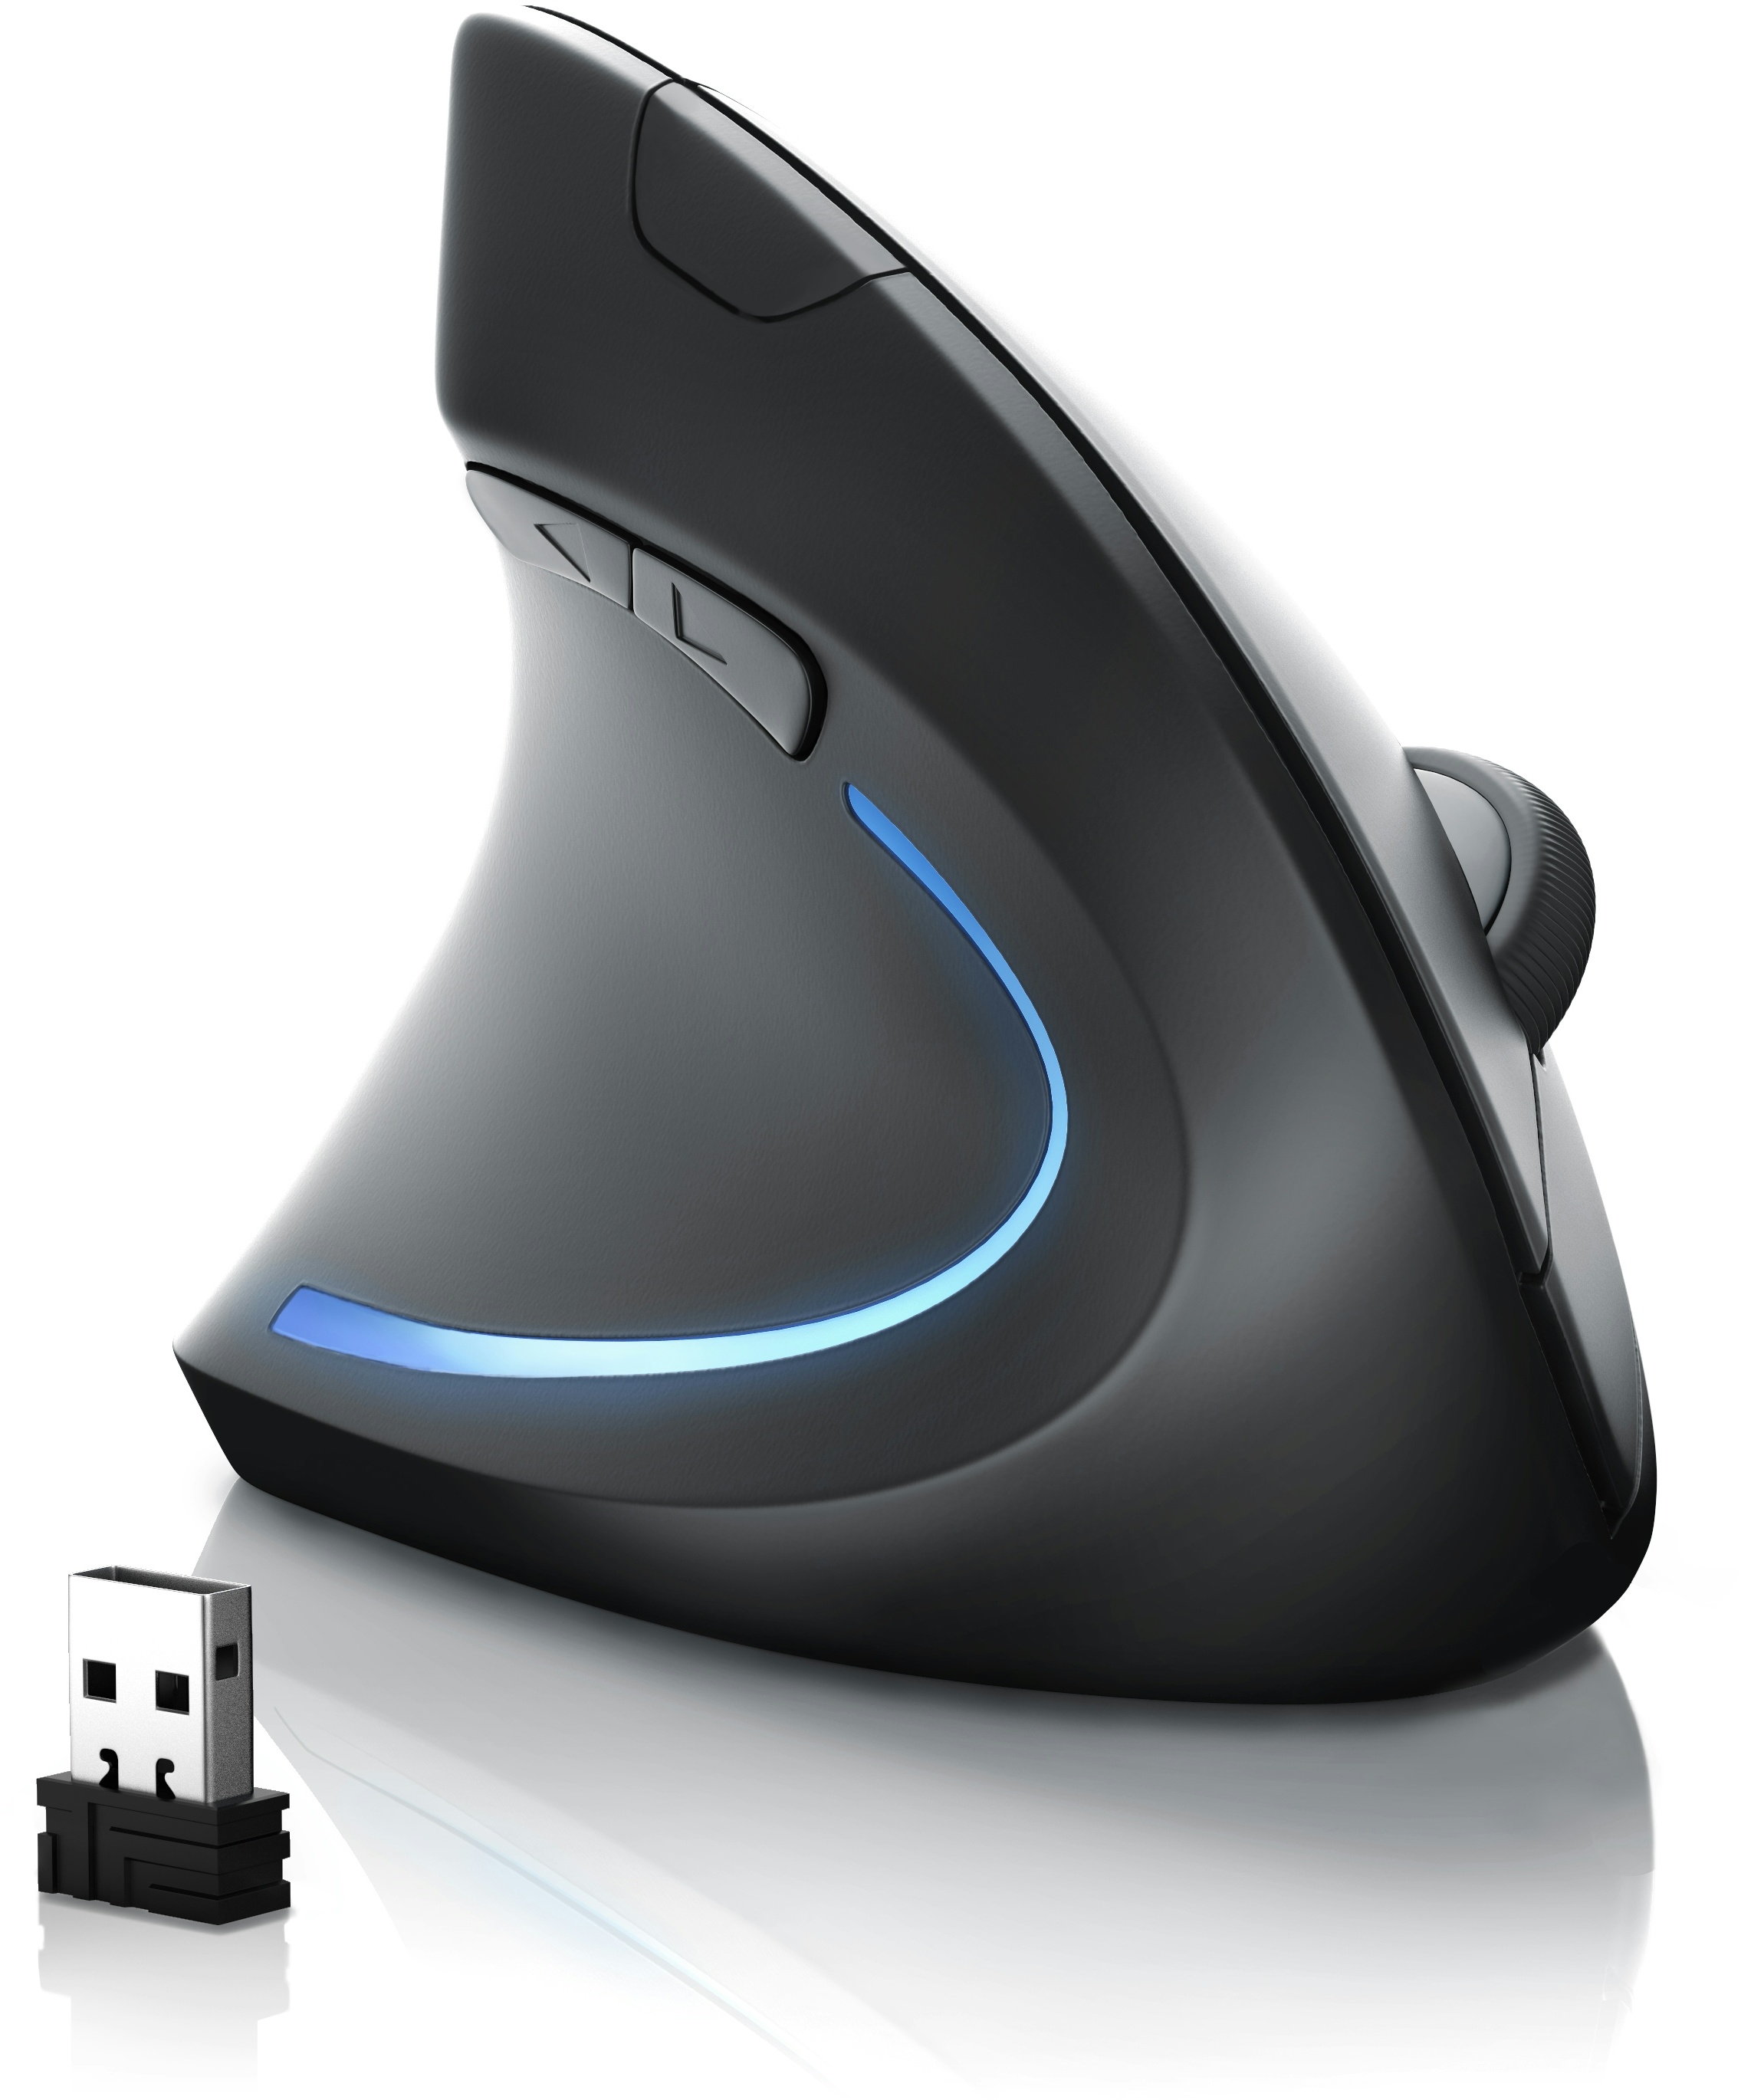 CSL - Maus kabellos für Linkshänder - Vertikalmaus Bluetooth und 2,4 Ghz Wireless Funkmaus - vertikal ergonomisch - Vorbeugung gegen Mausarm - für PC